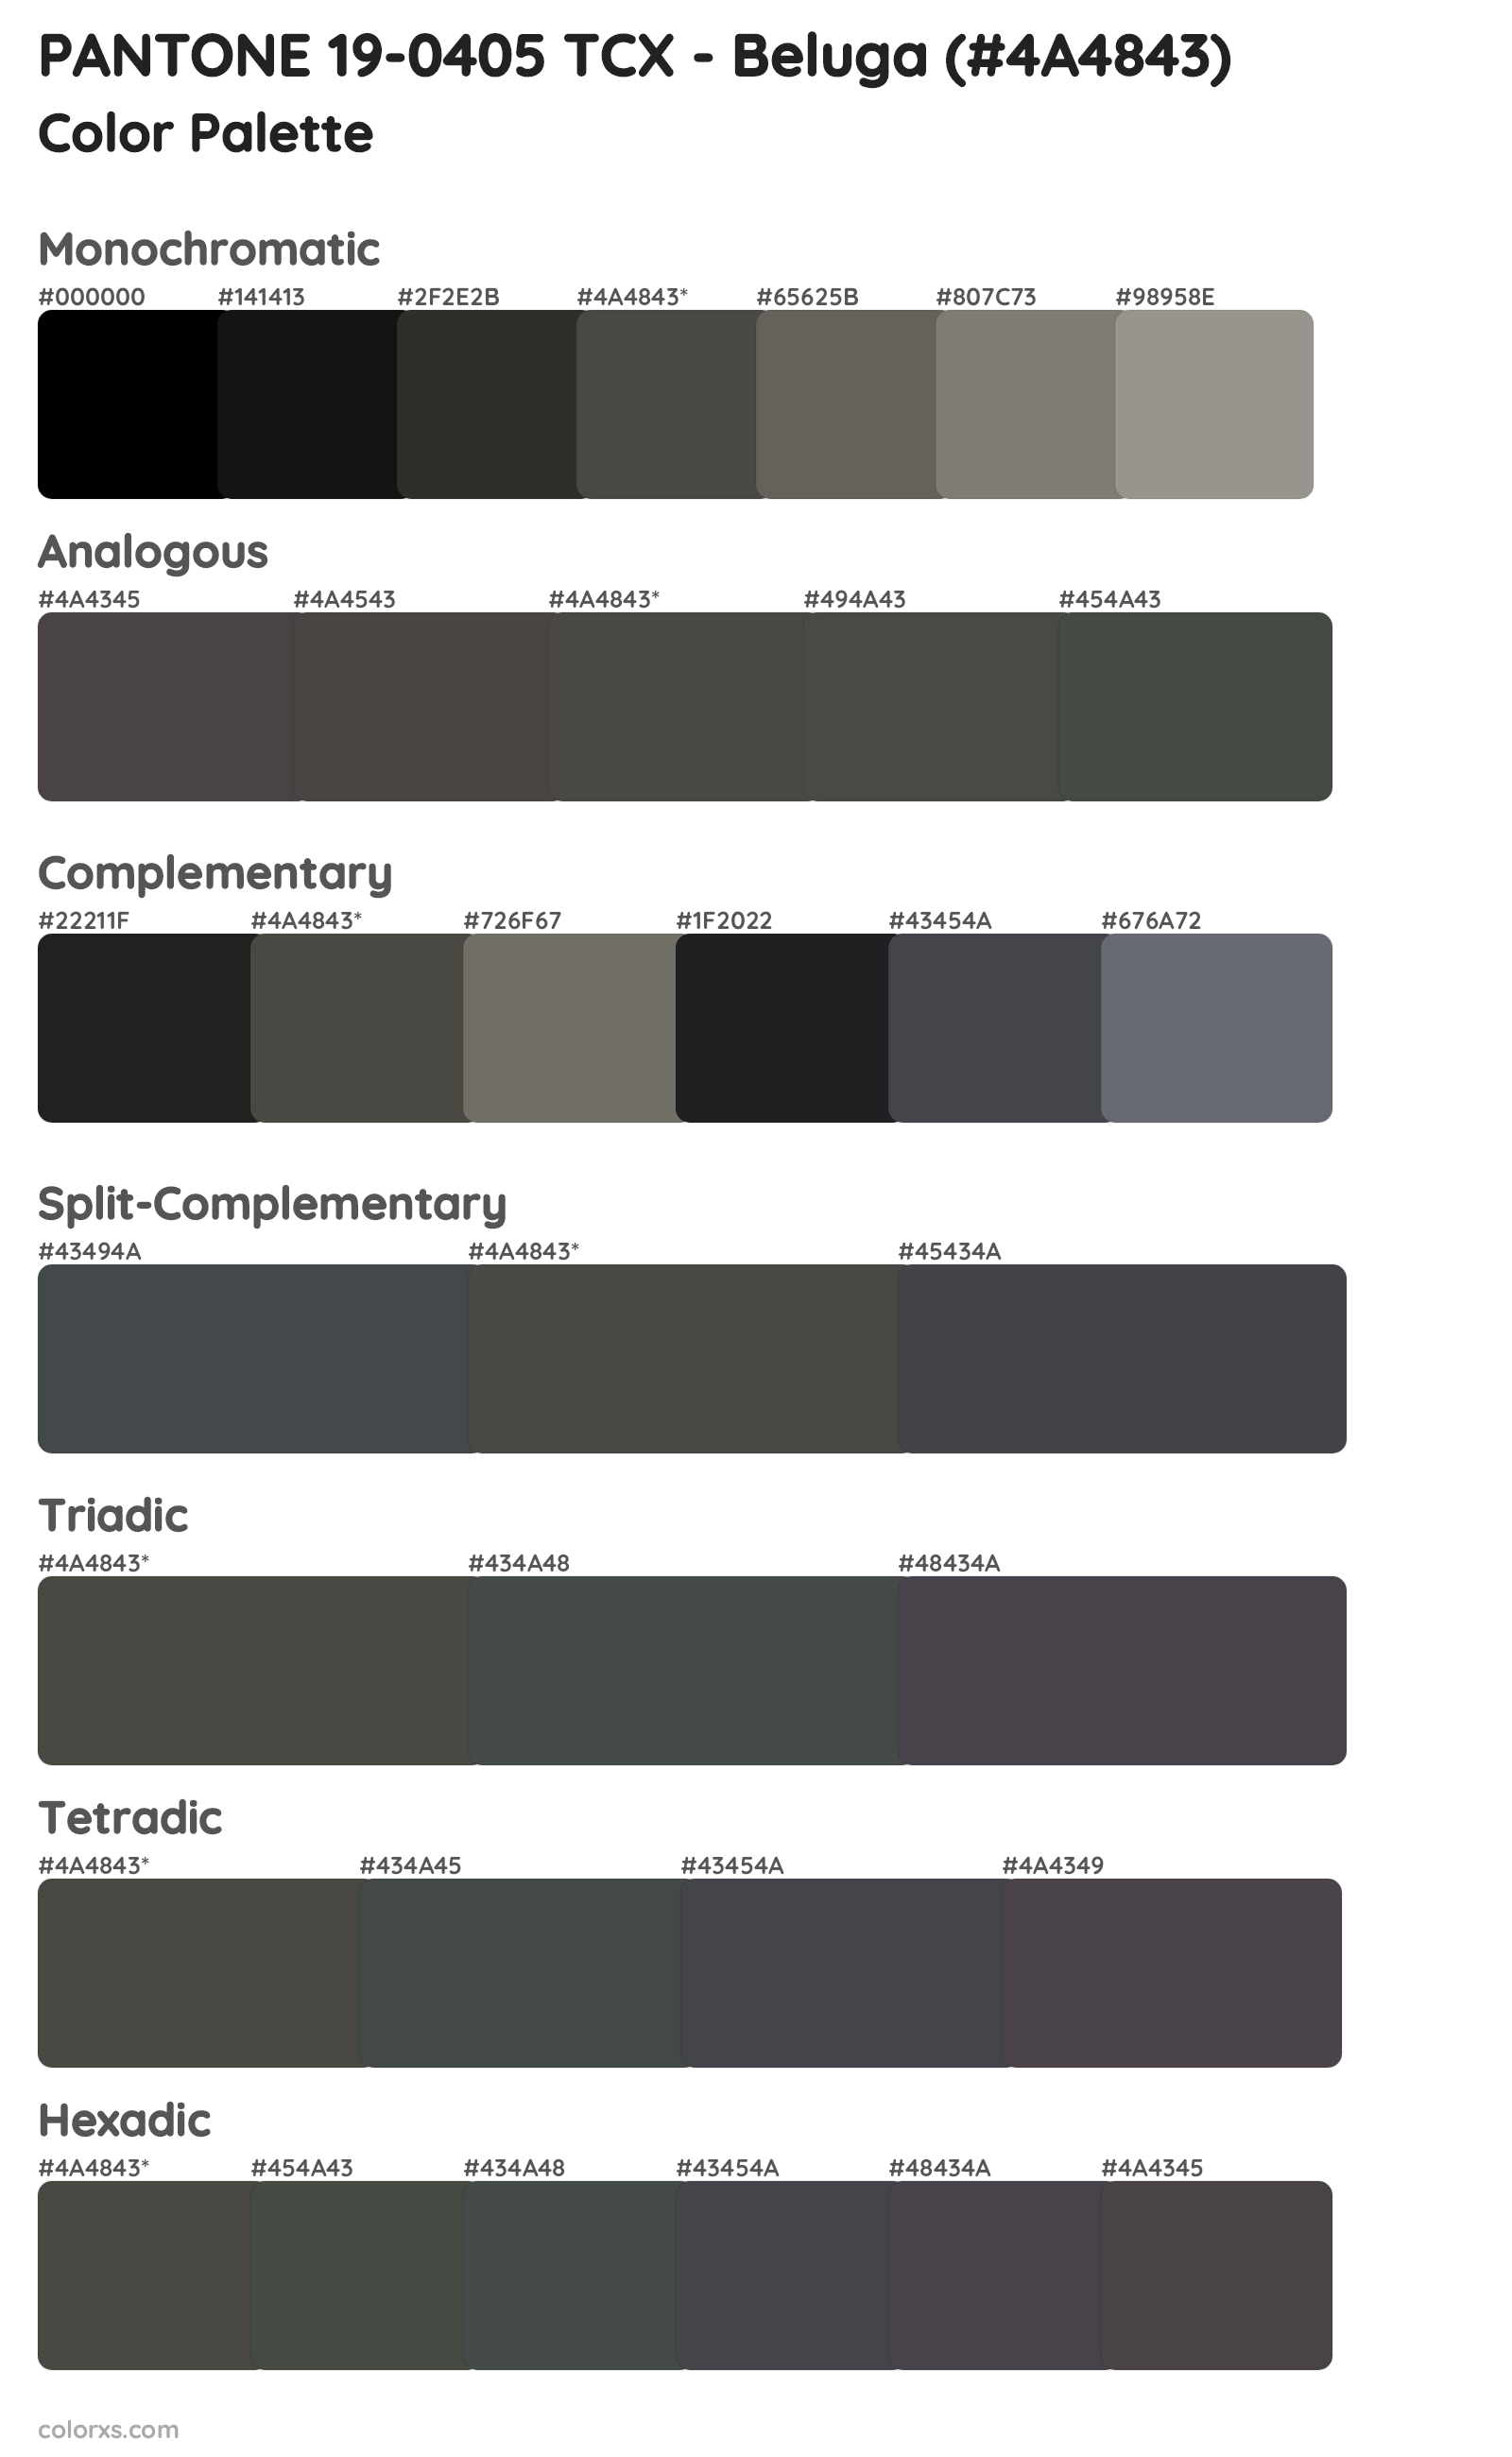 PANTONE 19-0405 TCX - Beluga Color Scheme Palettes